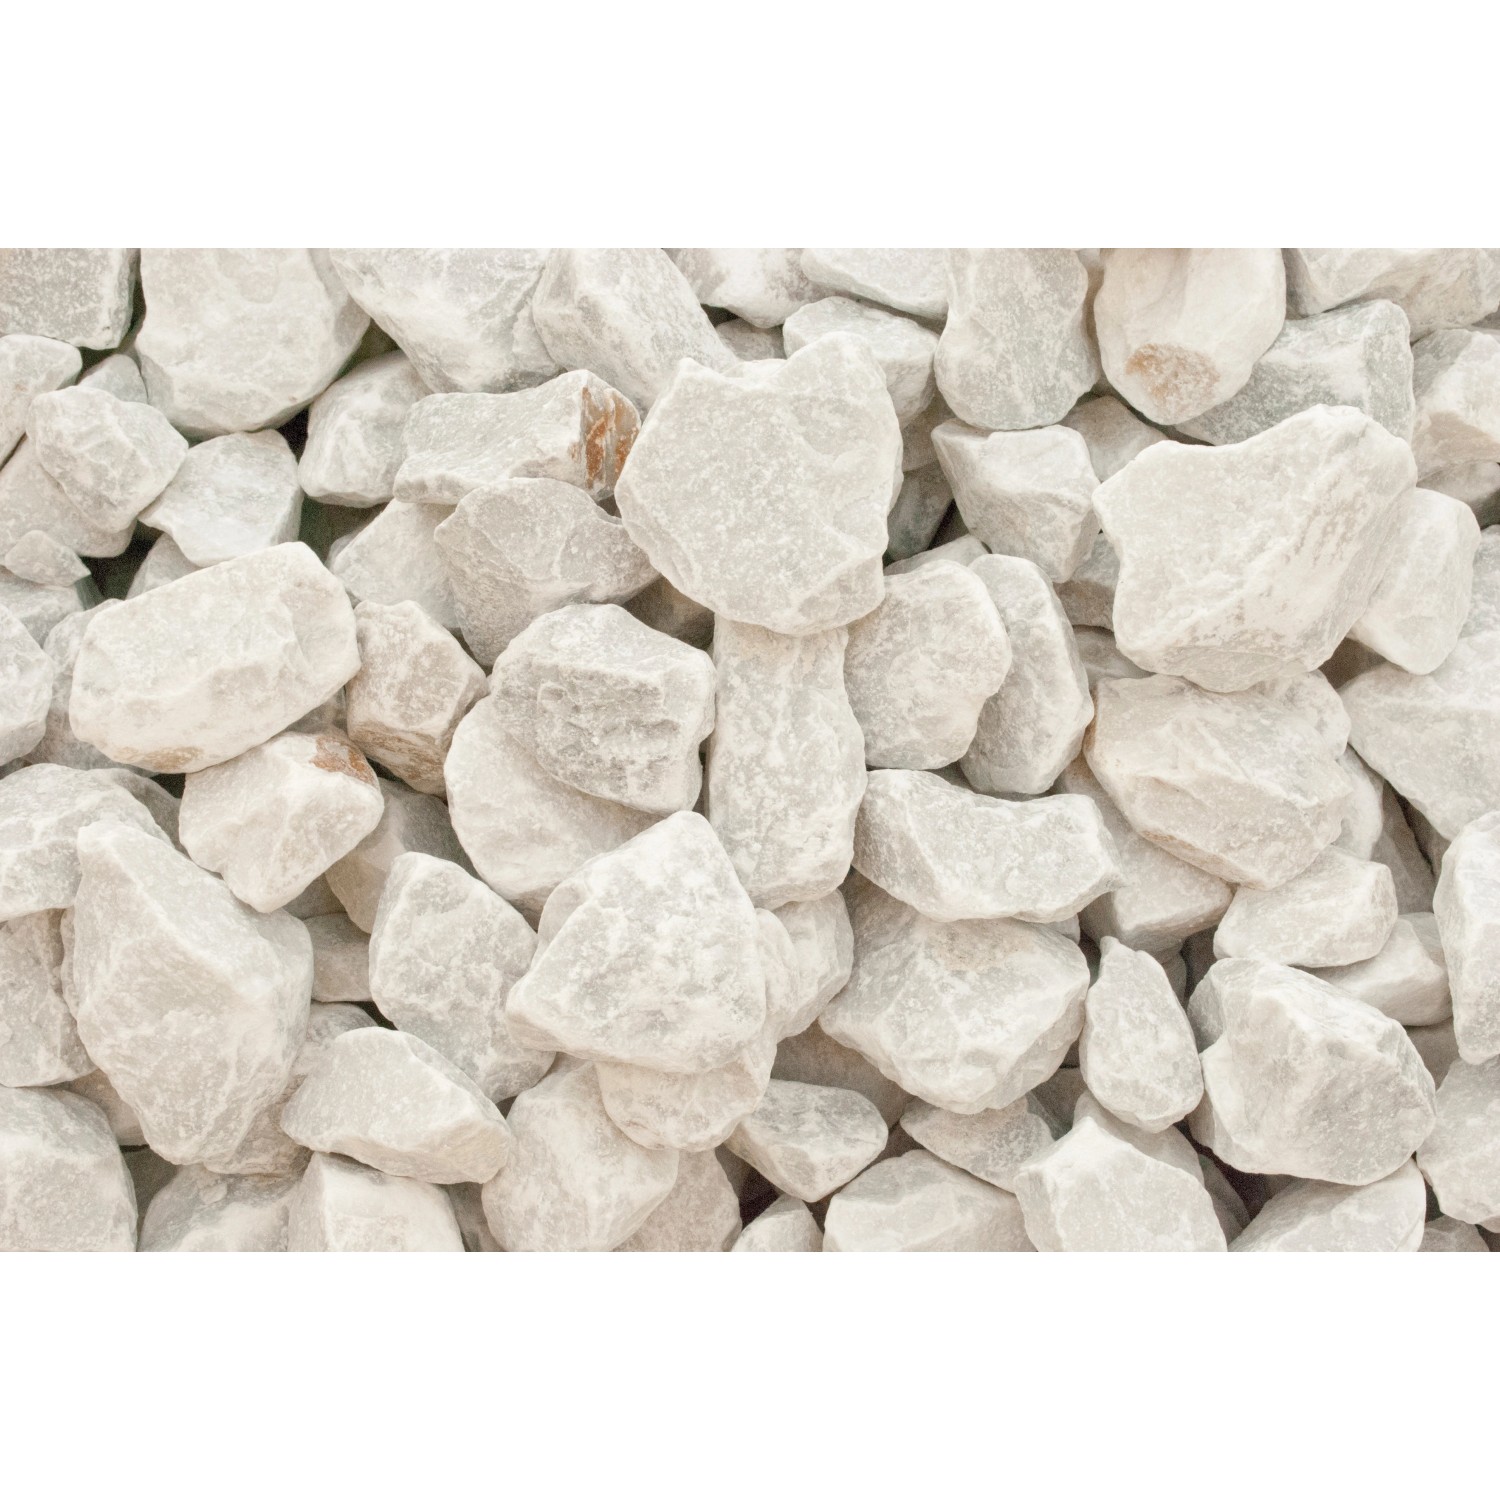 Marmorbruch Carrara Weiß 25 - 50 mm 25 kg PE-Sack